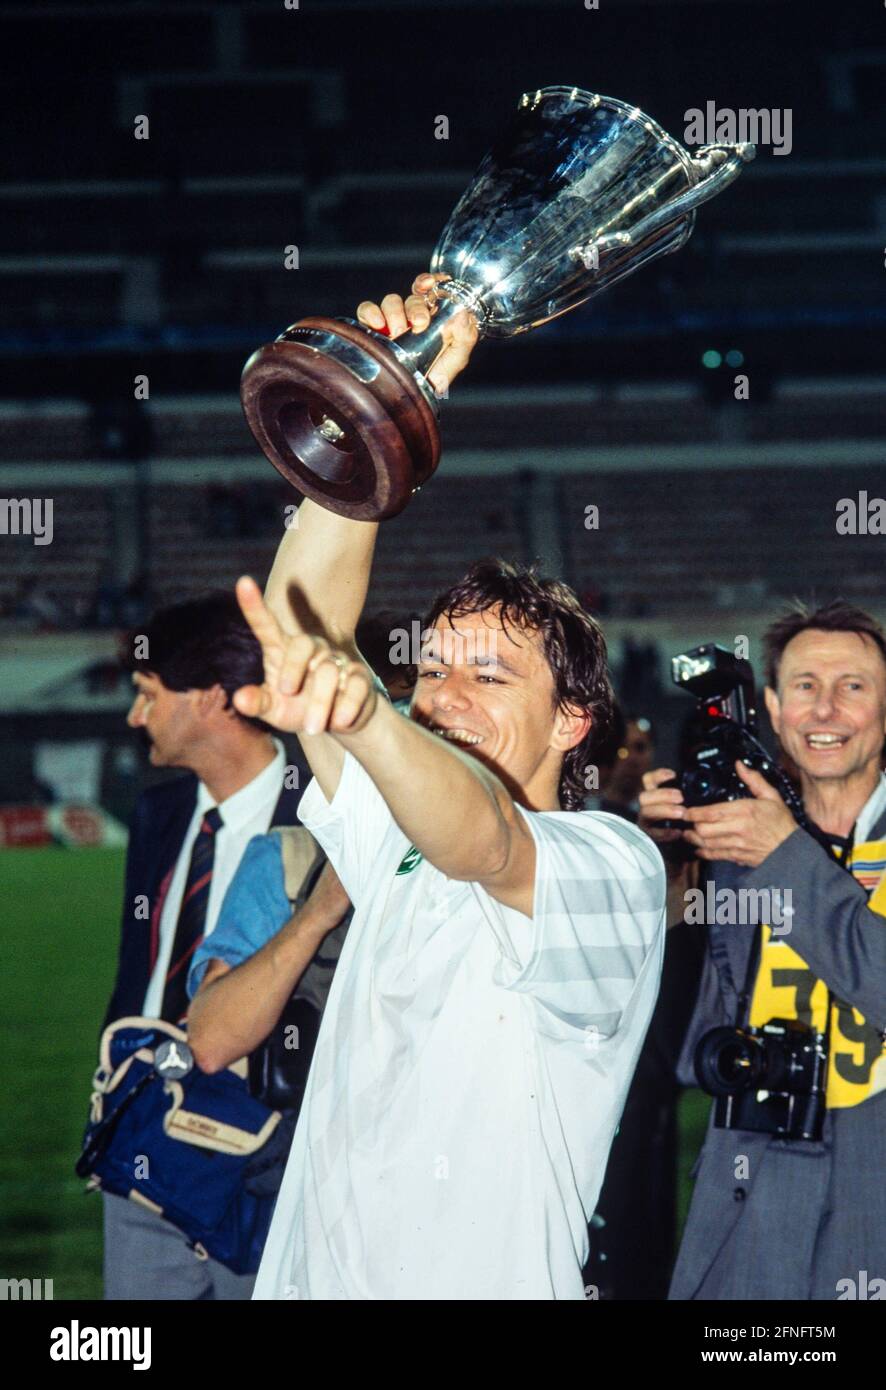 FUSSBALL-CUP DER POKALSIEGER SAISON 1991/1992 FINALE SV Werder Bremen - AS Monaco 06.05.1992 Wynton Rufer (SV Werder Bremen) jubelt über den Pokal FOTO: WEREK Pressebildagentur xxNOxMODELxRELEASExx Stockfoto